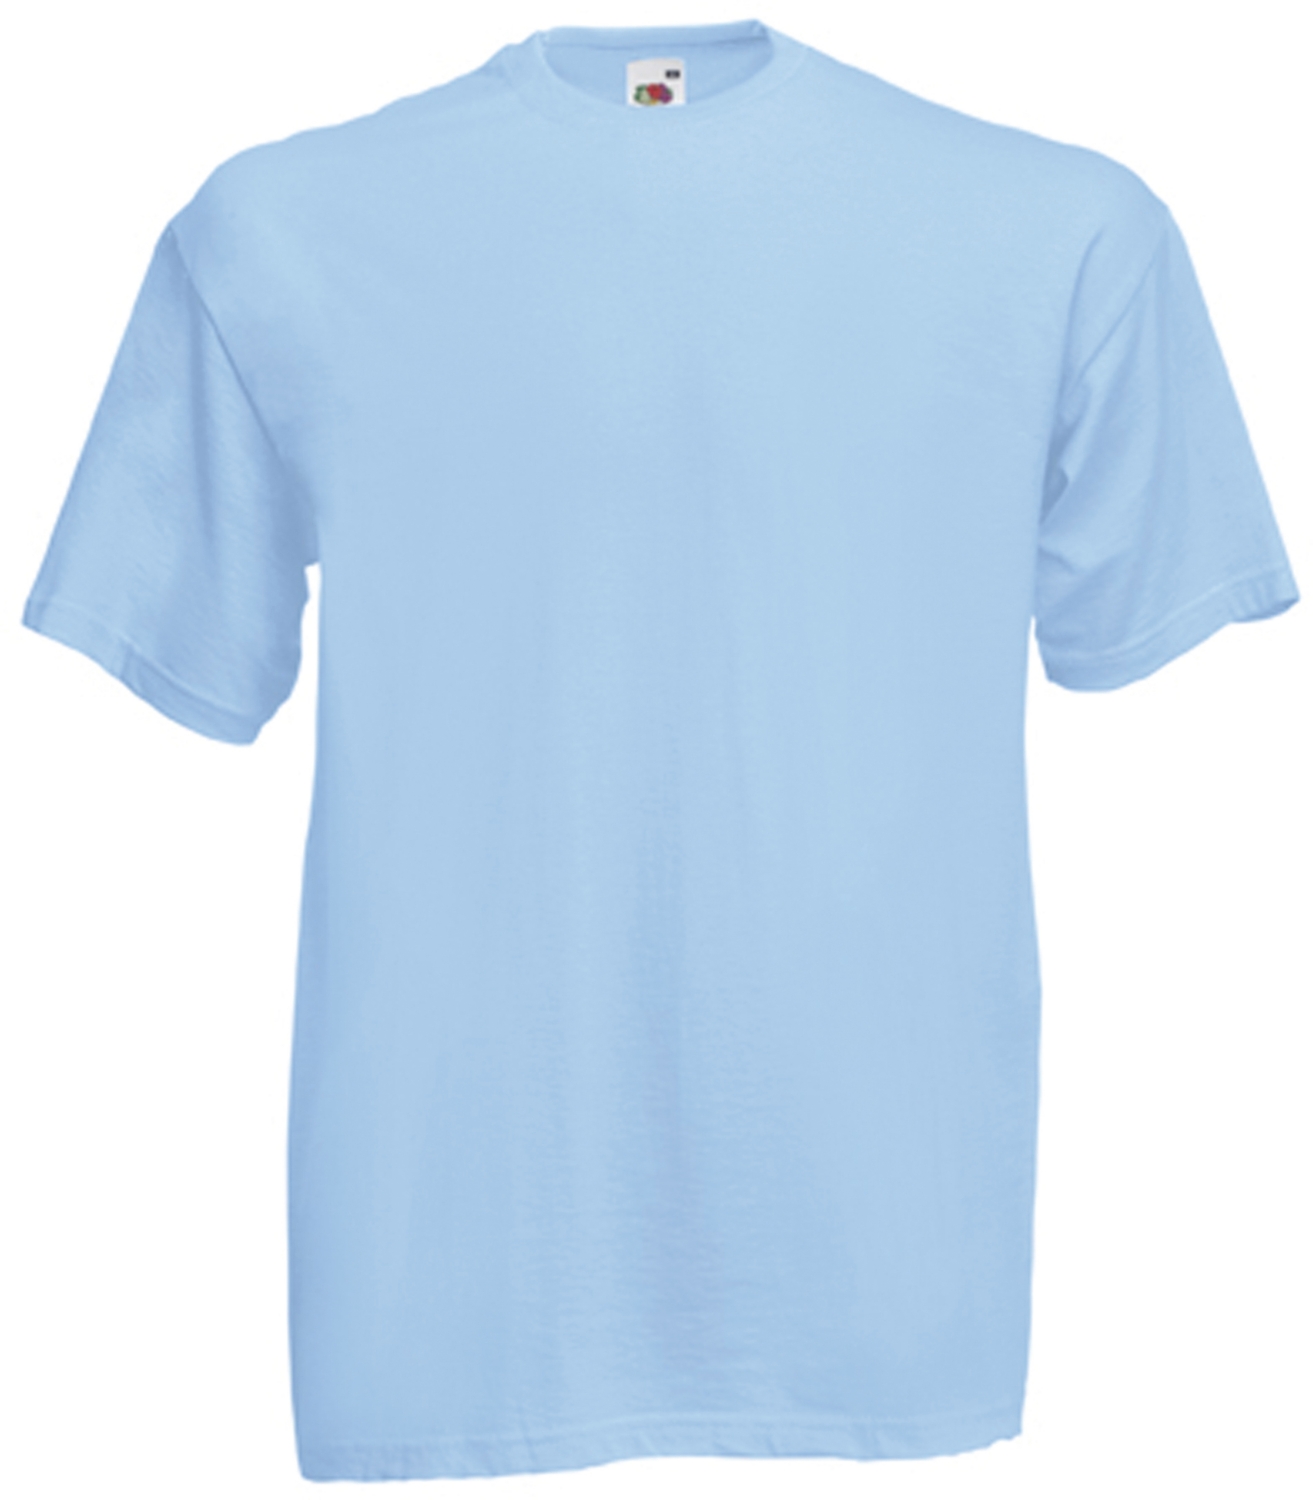 Tee-shirt Value-Weight - Bleu ciel Fruit Of The Loom